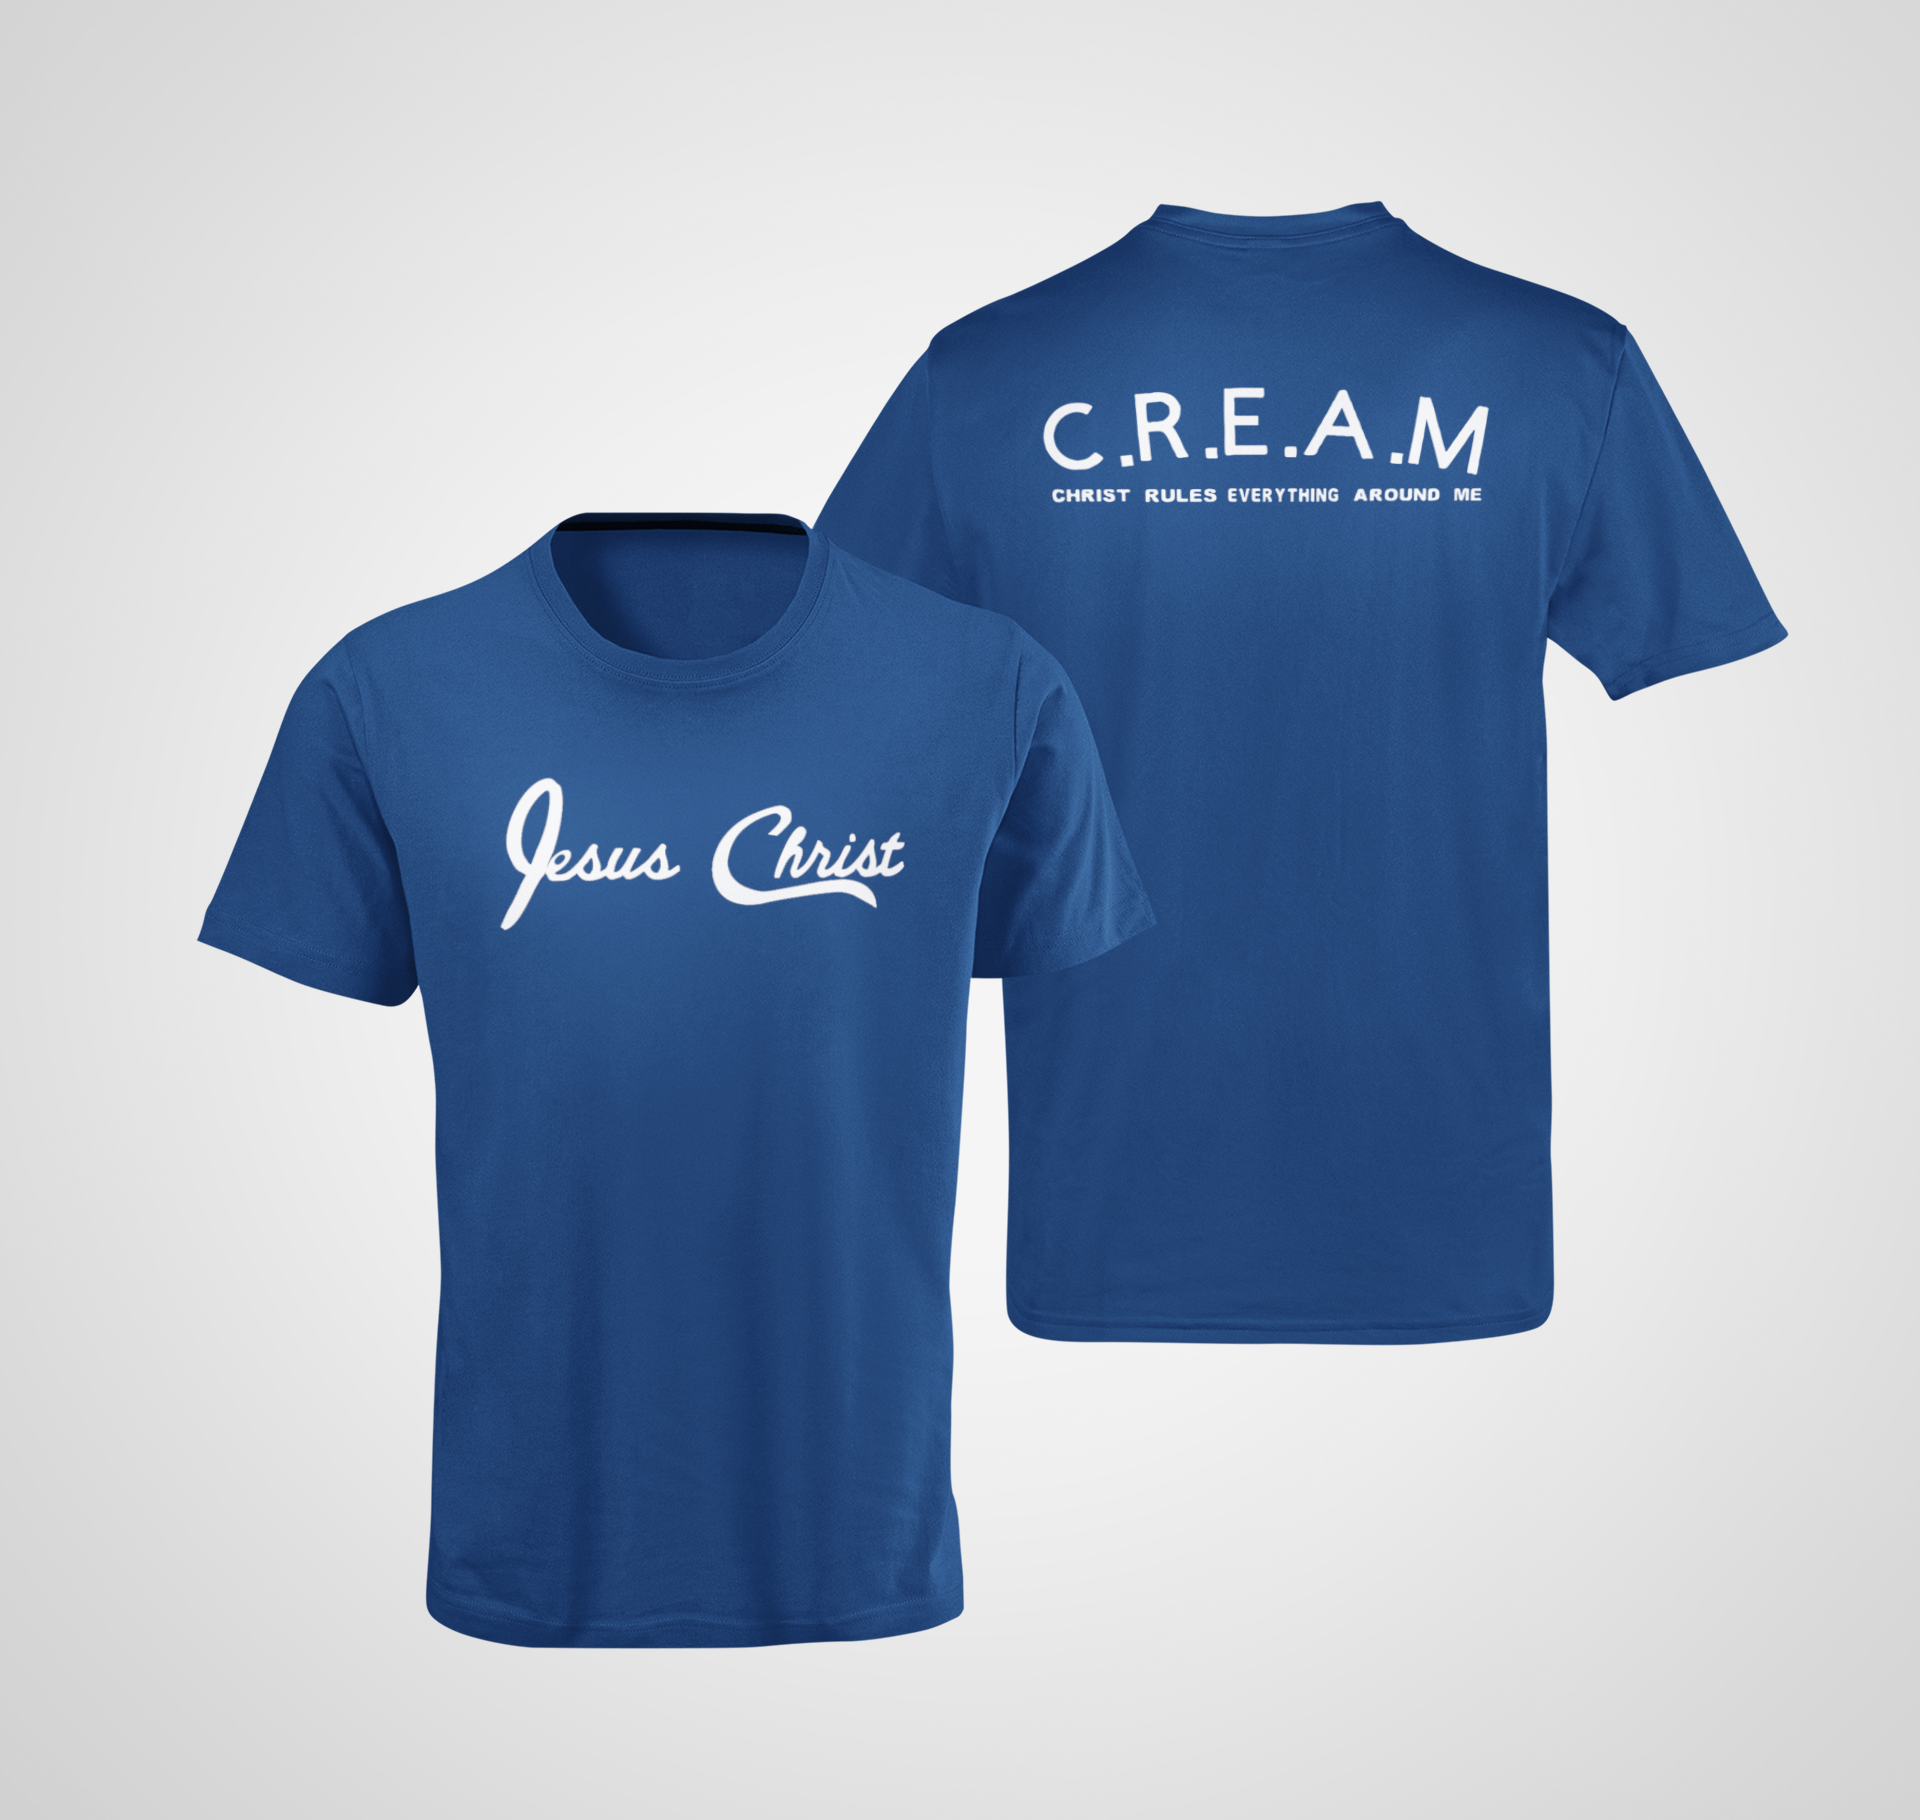 Jesus Christ/CREAM T-Shirt